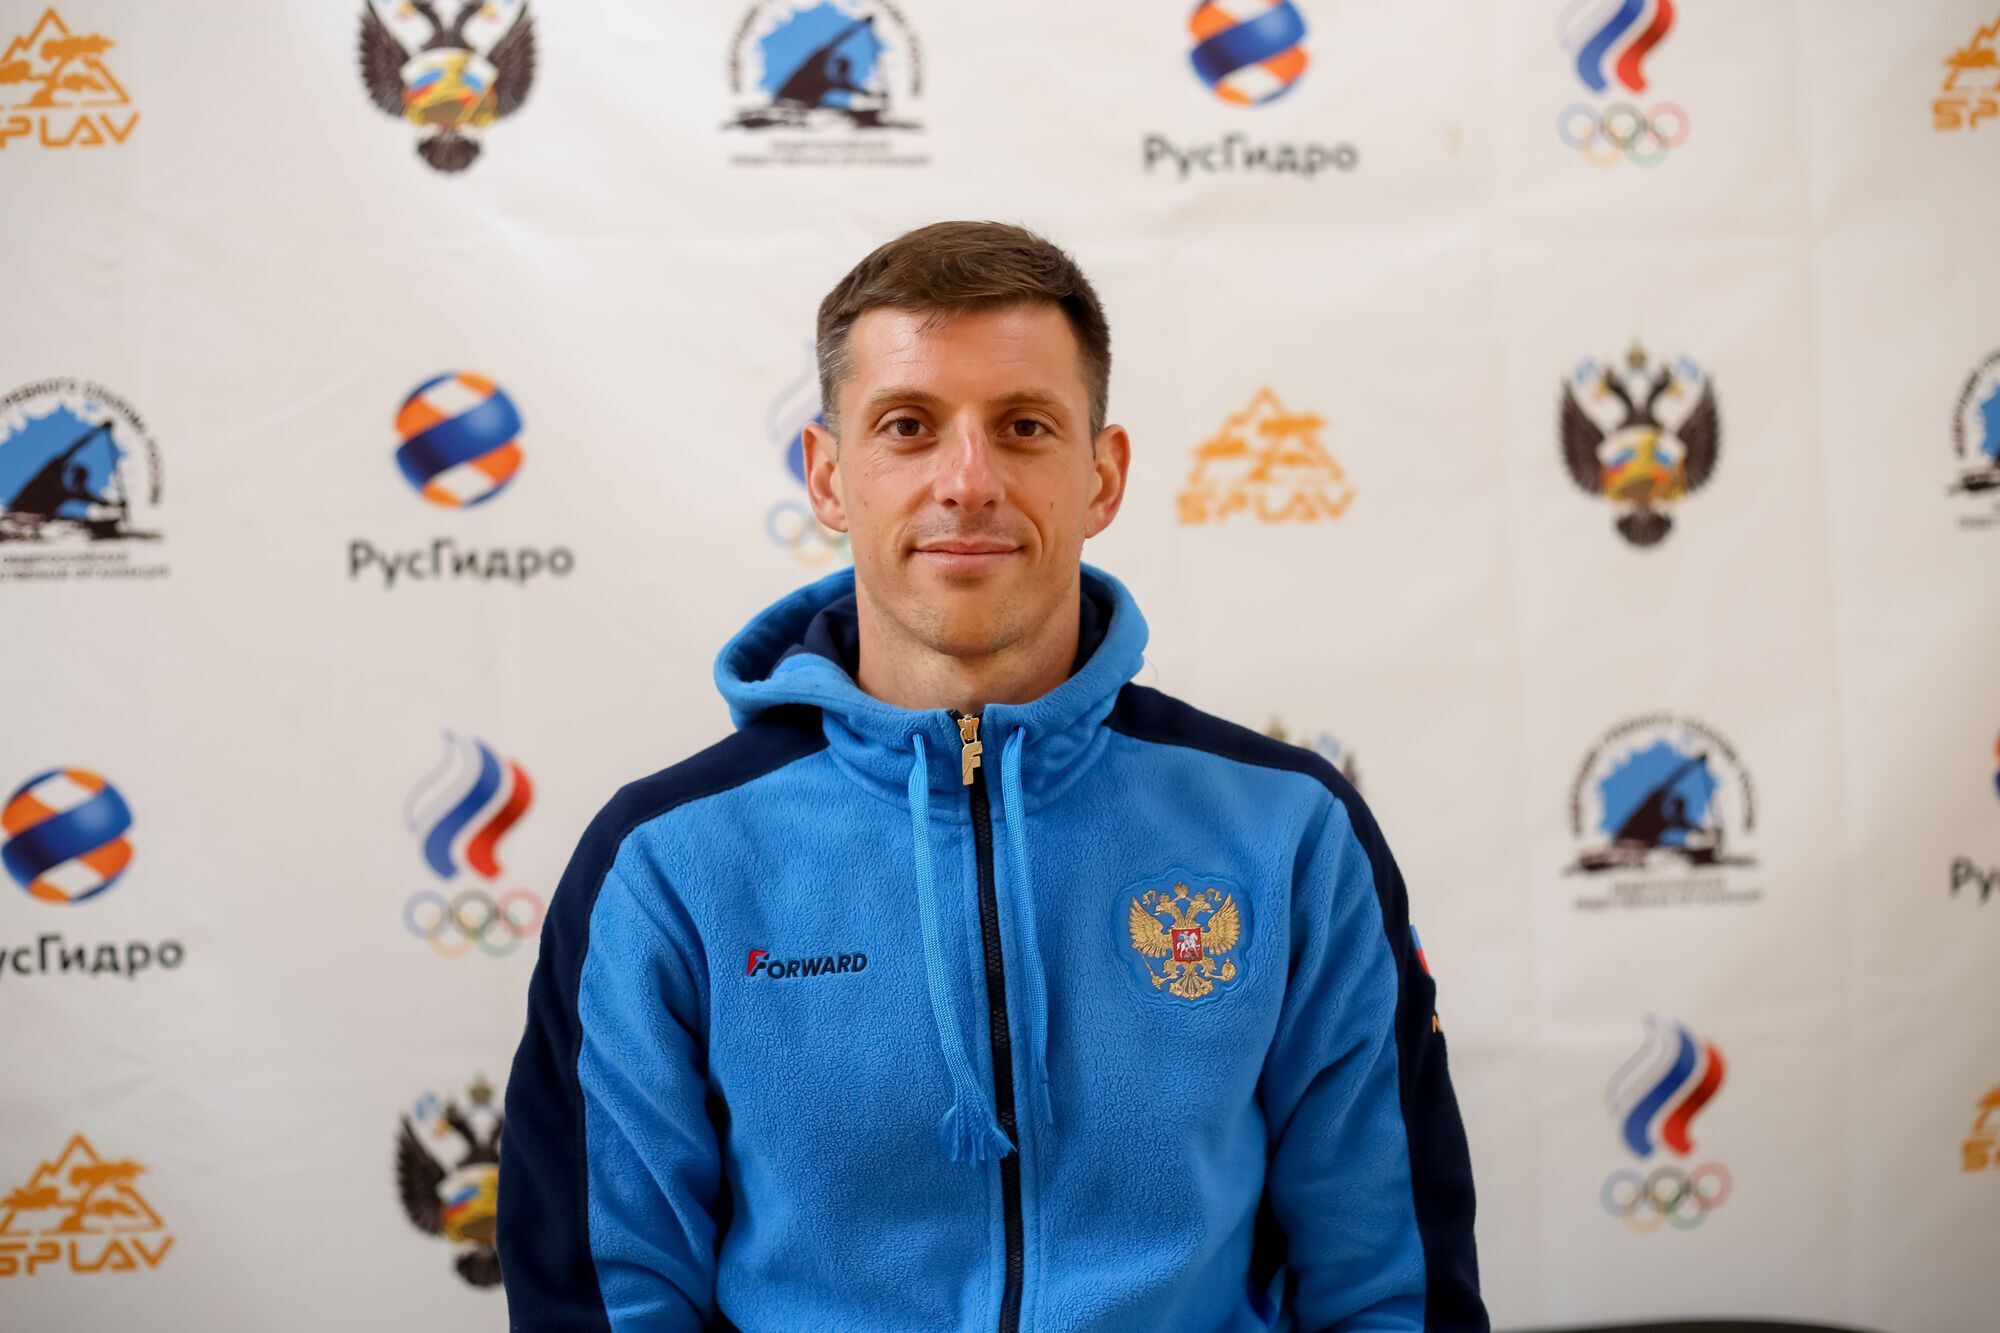 Збірну Росії позбавили Олімпіади-2024, не пустивши до Чехії на кваліфікаційний турнір із гребного слалому xdideeieuidduant